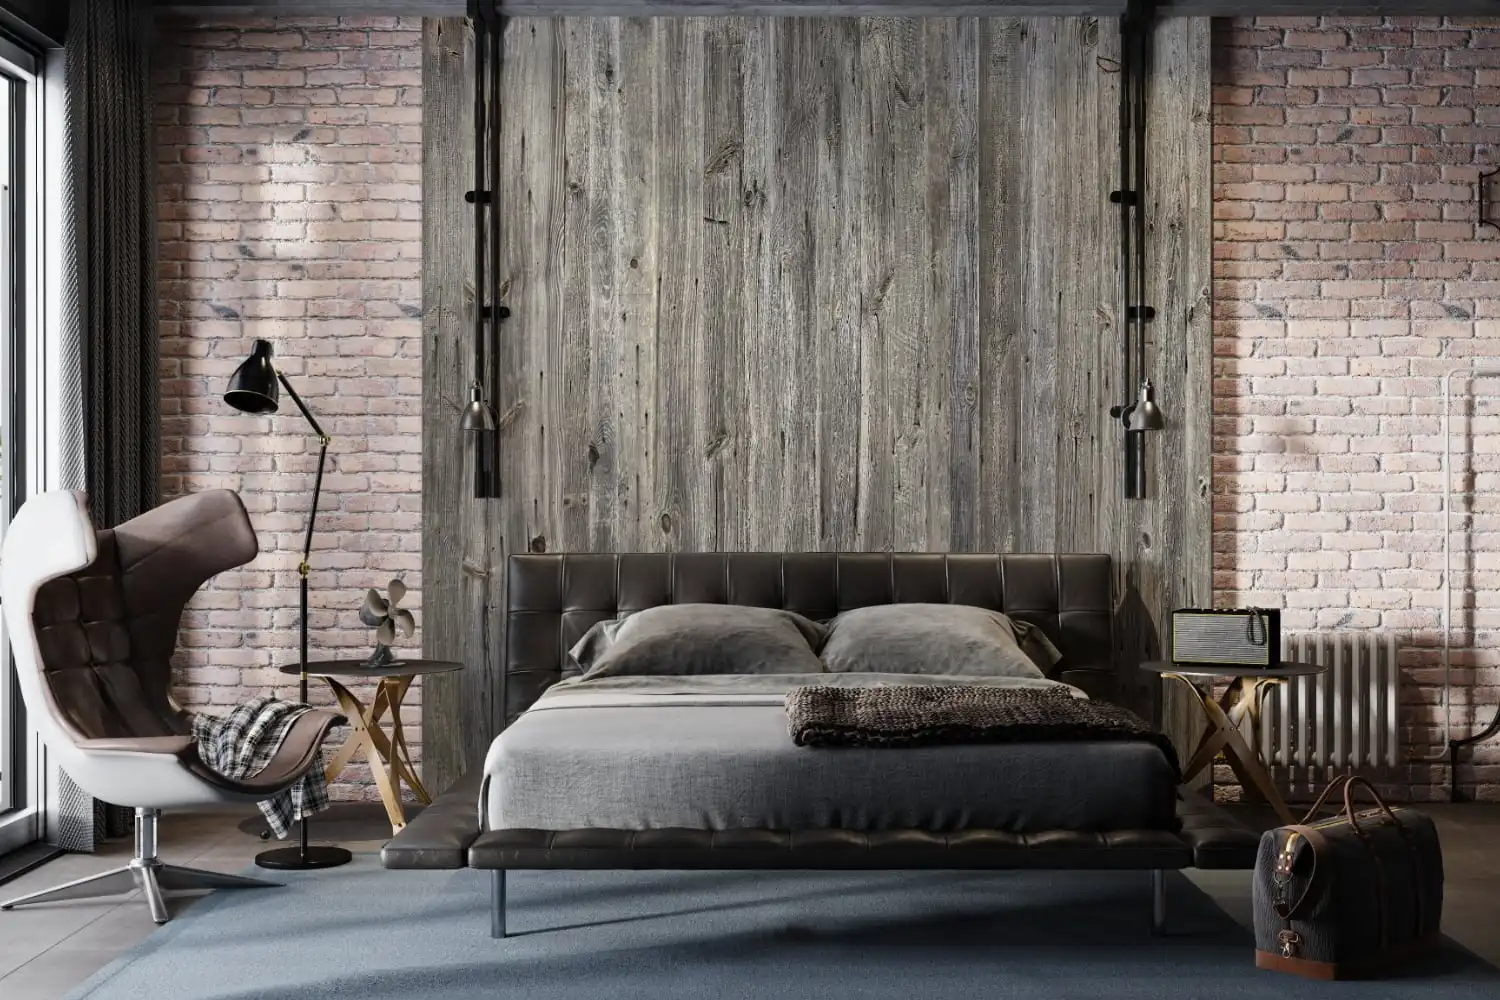 Chambre industrielle moderne avec murs en briques apparentes, grande porte coulissante en bois et mobilier minimaliste.